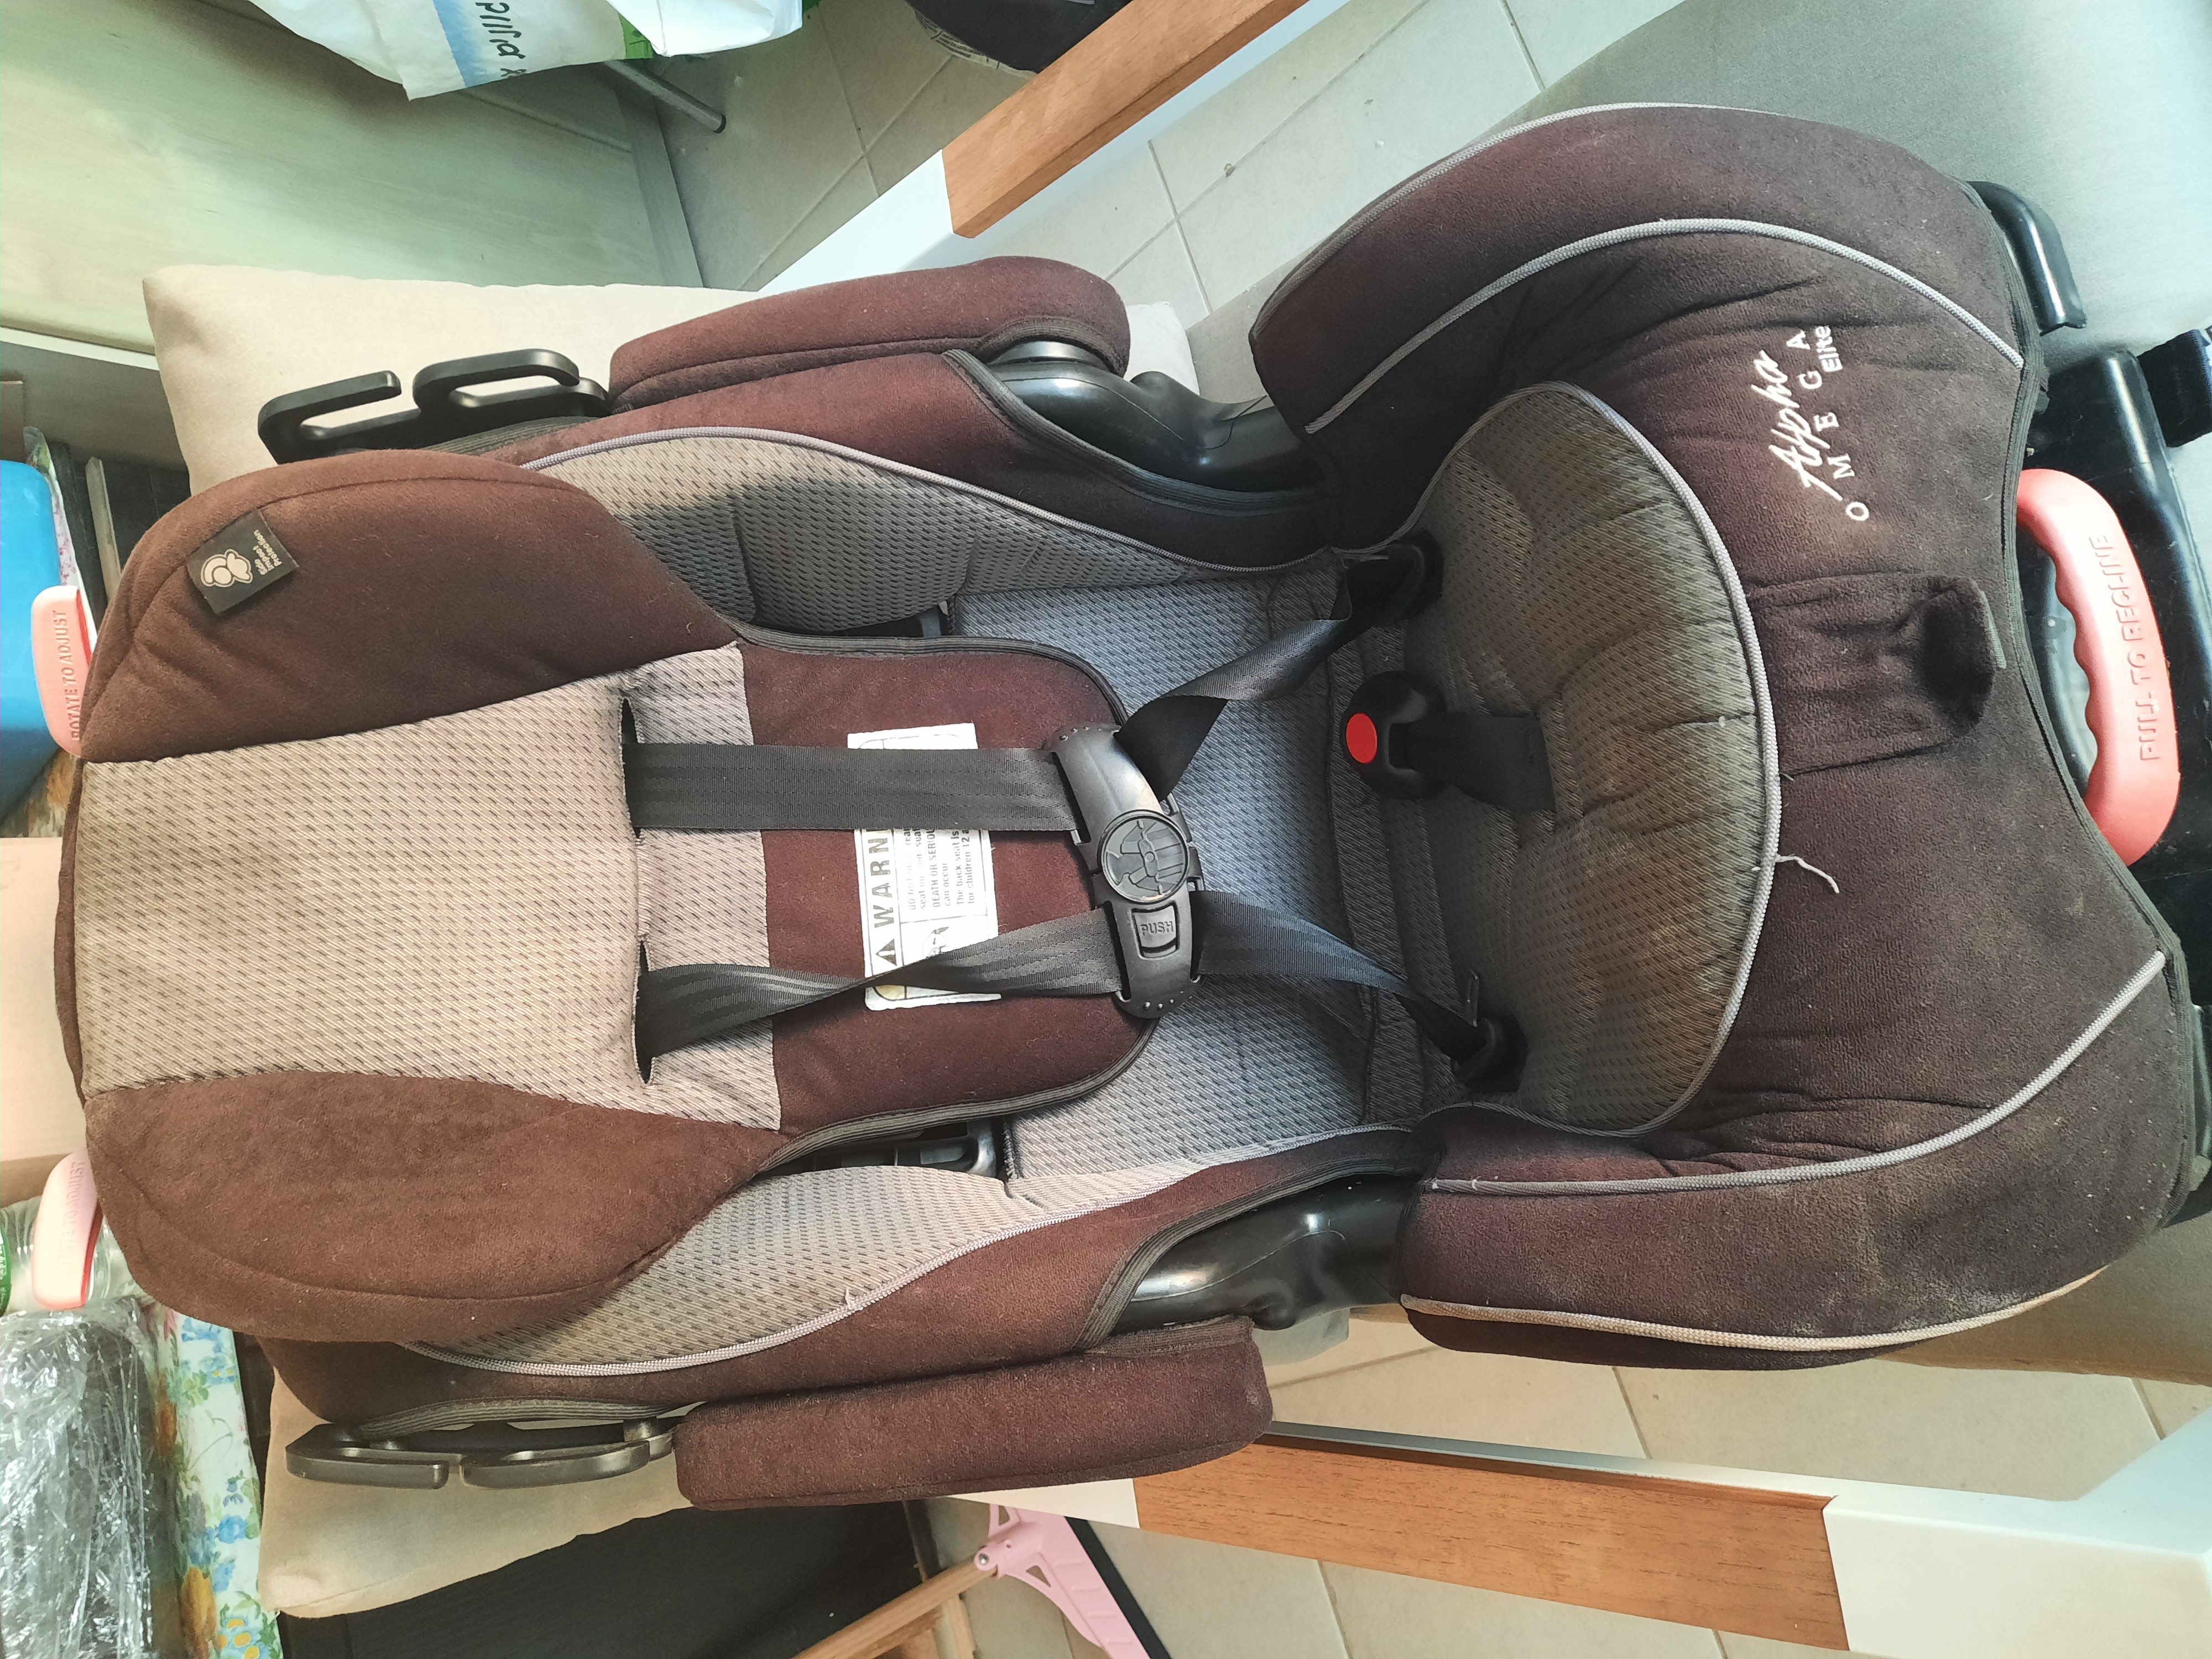 תמונה 1 ,כסא בטיחות לרכב למכירה בראשון לתינוק ולילד  כסא לרכב